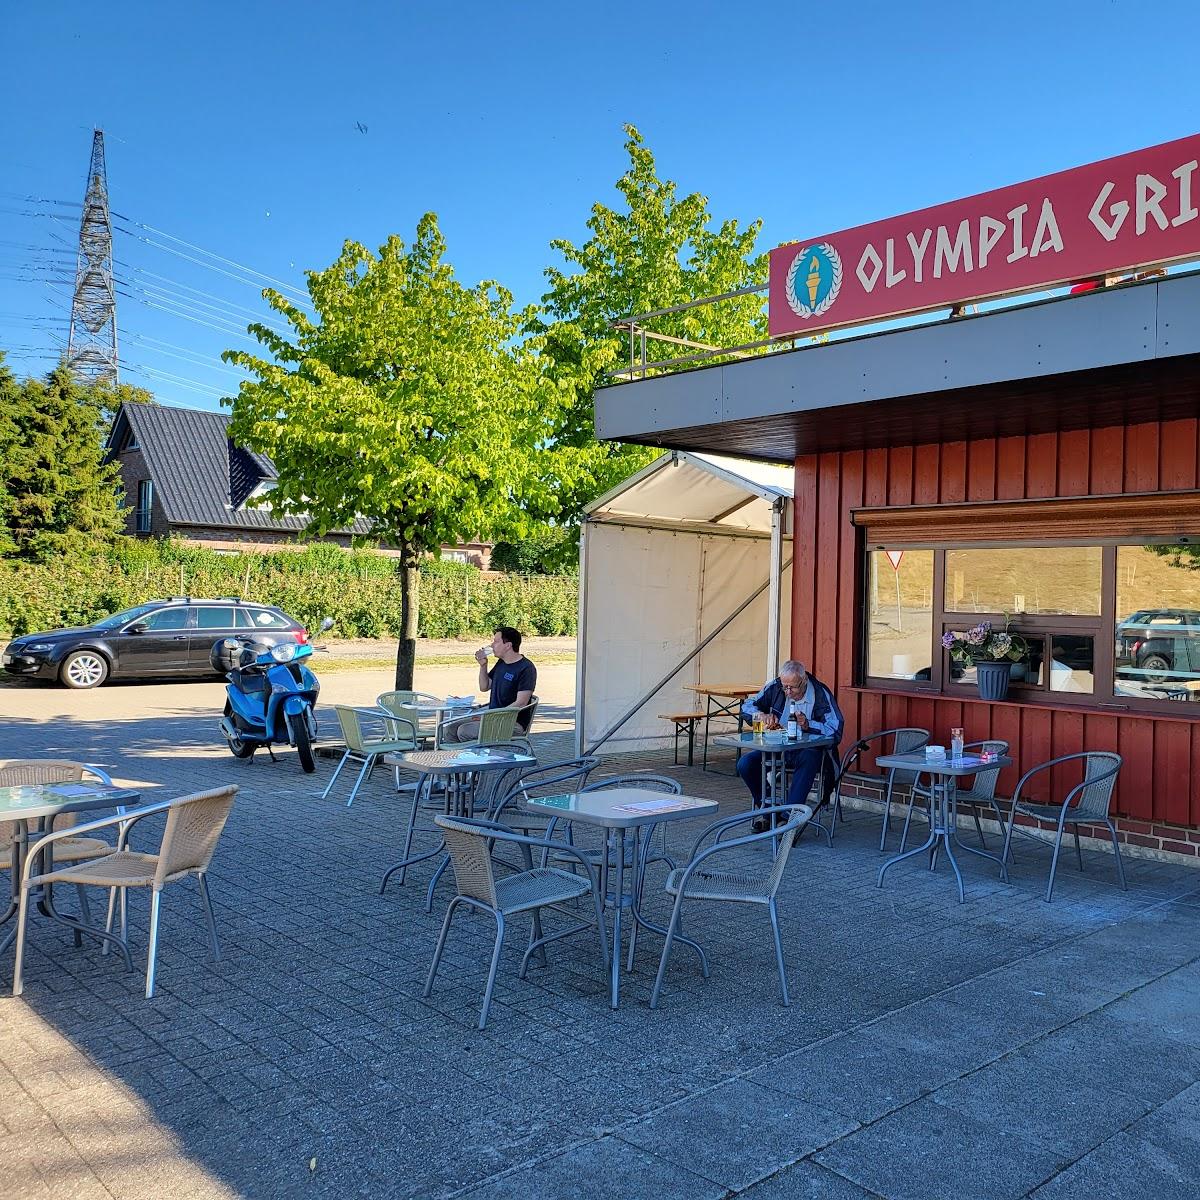 Restaurant "Olympia Grill" in Hollern-Twielenfleth